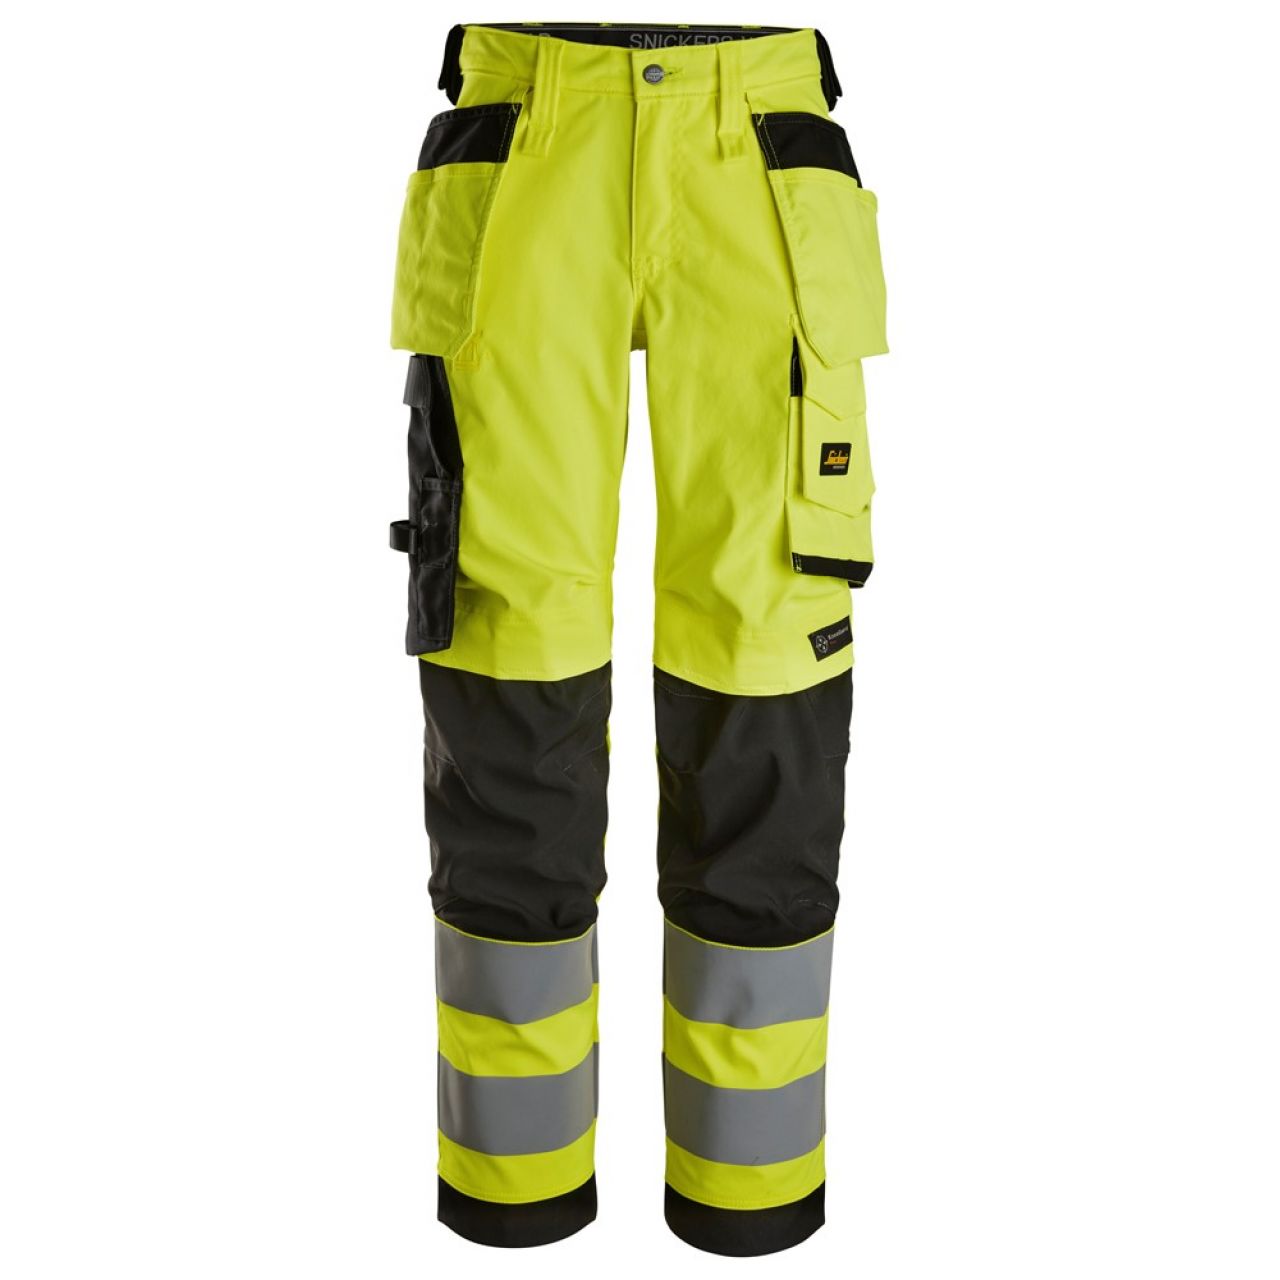 6743 Pantalones largos de trabajo elásticos de alta visibilidad clase 2 para mujer con bolsillos flotantes amarillo-negro talla 44